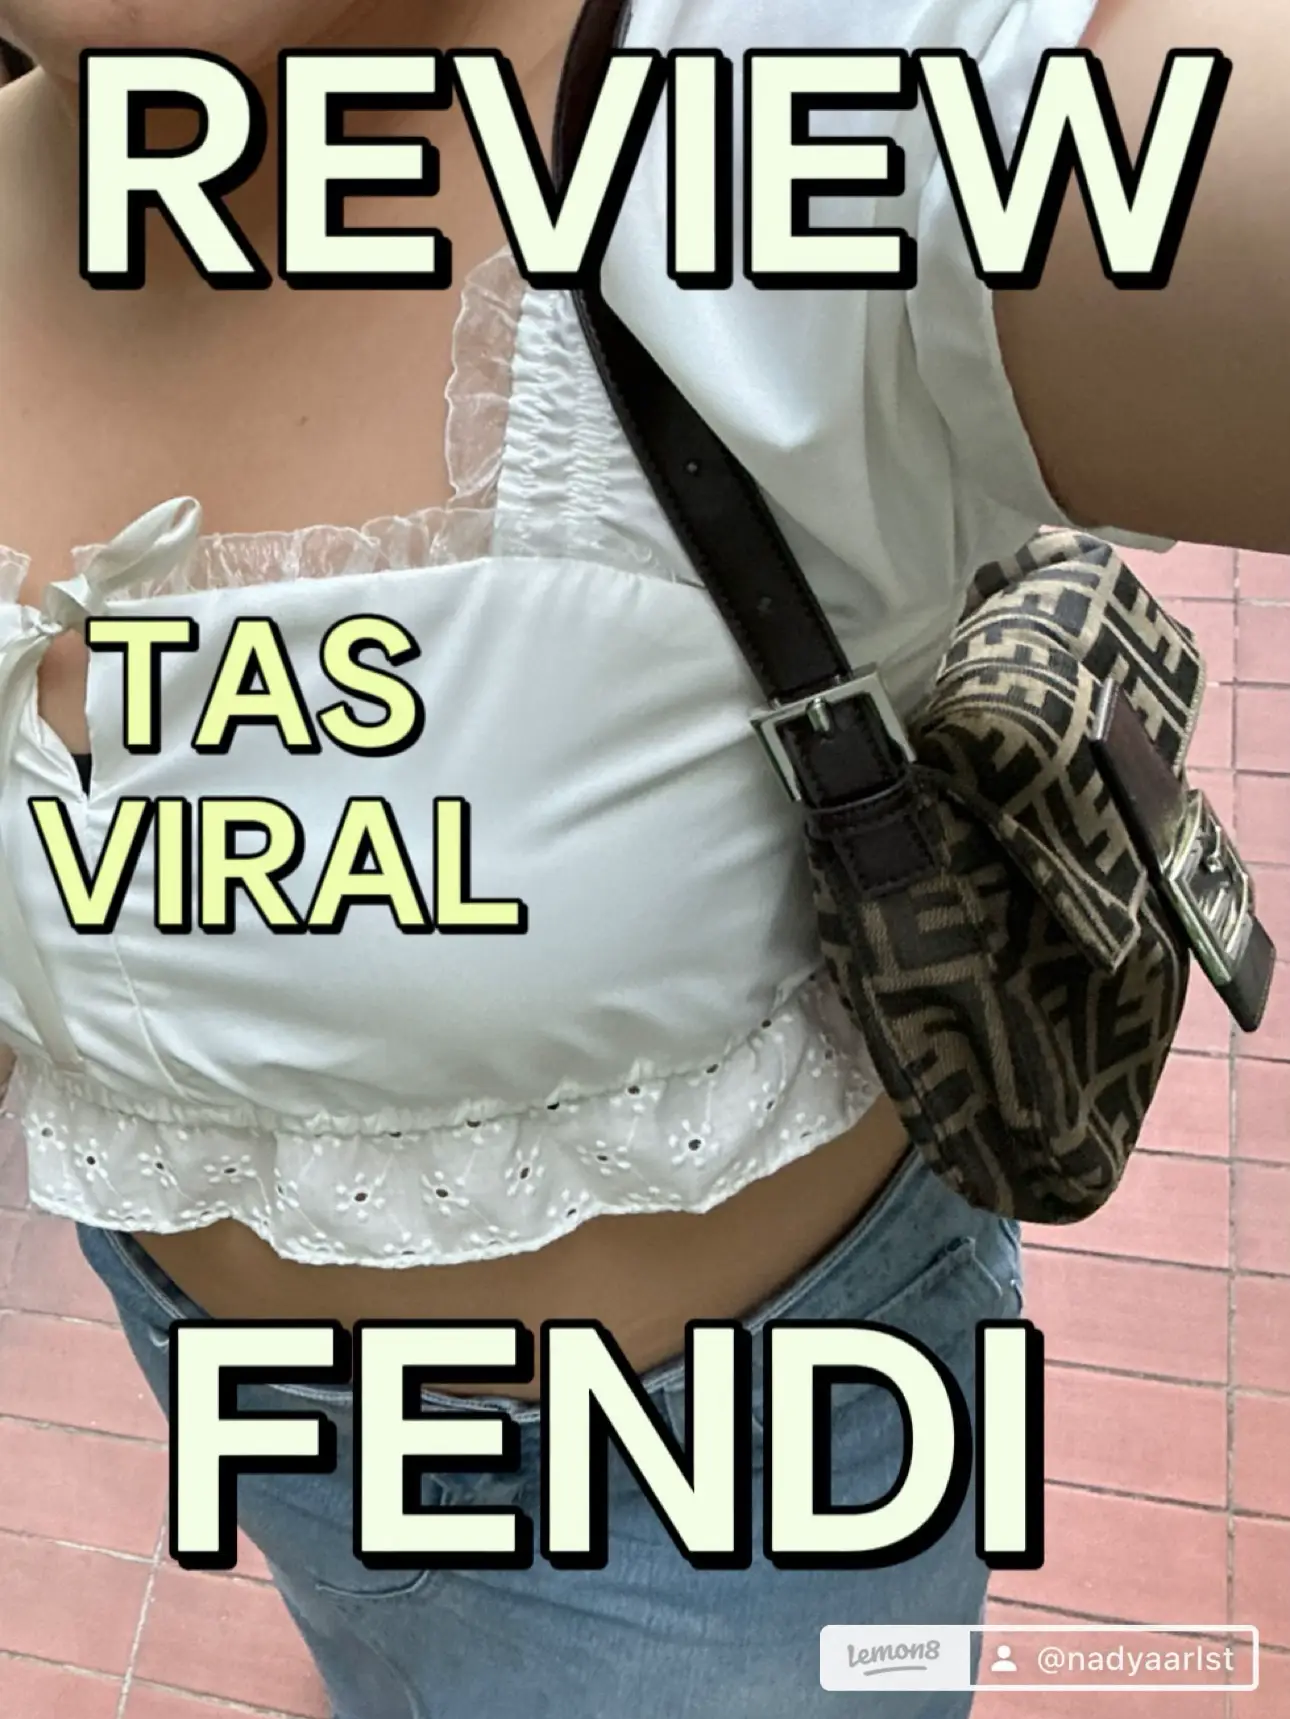 Fendi Baguette Review 